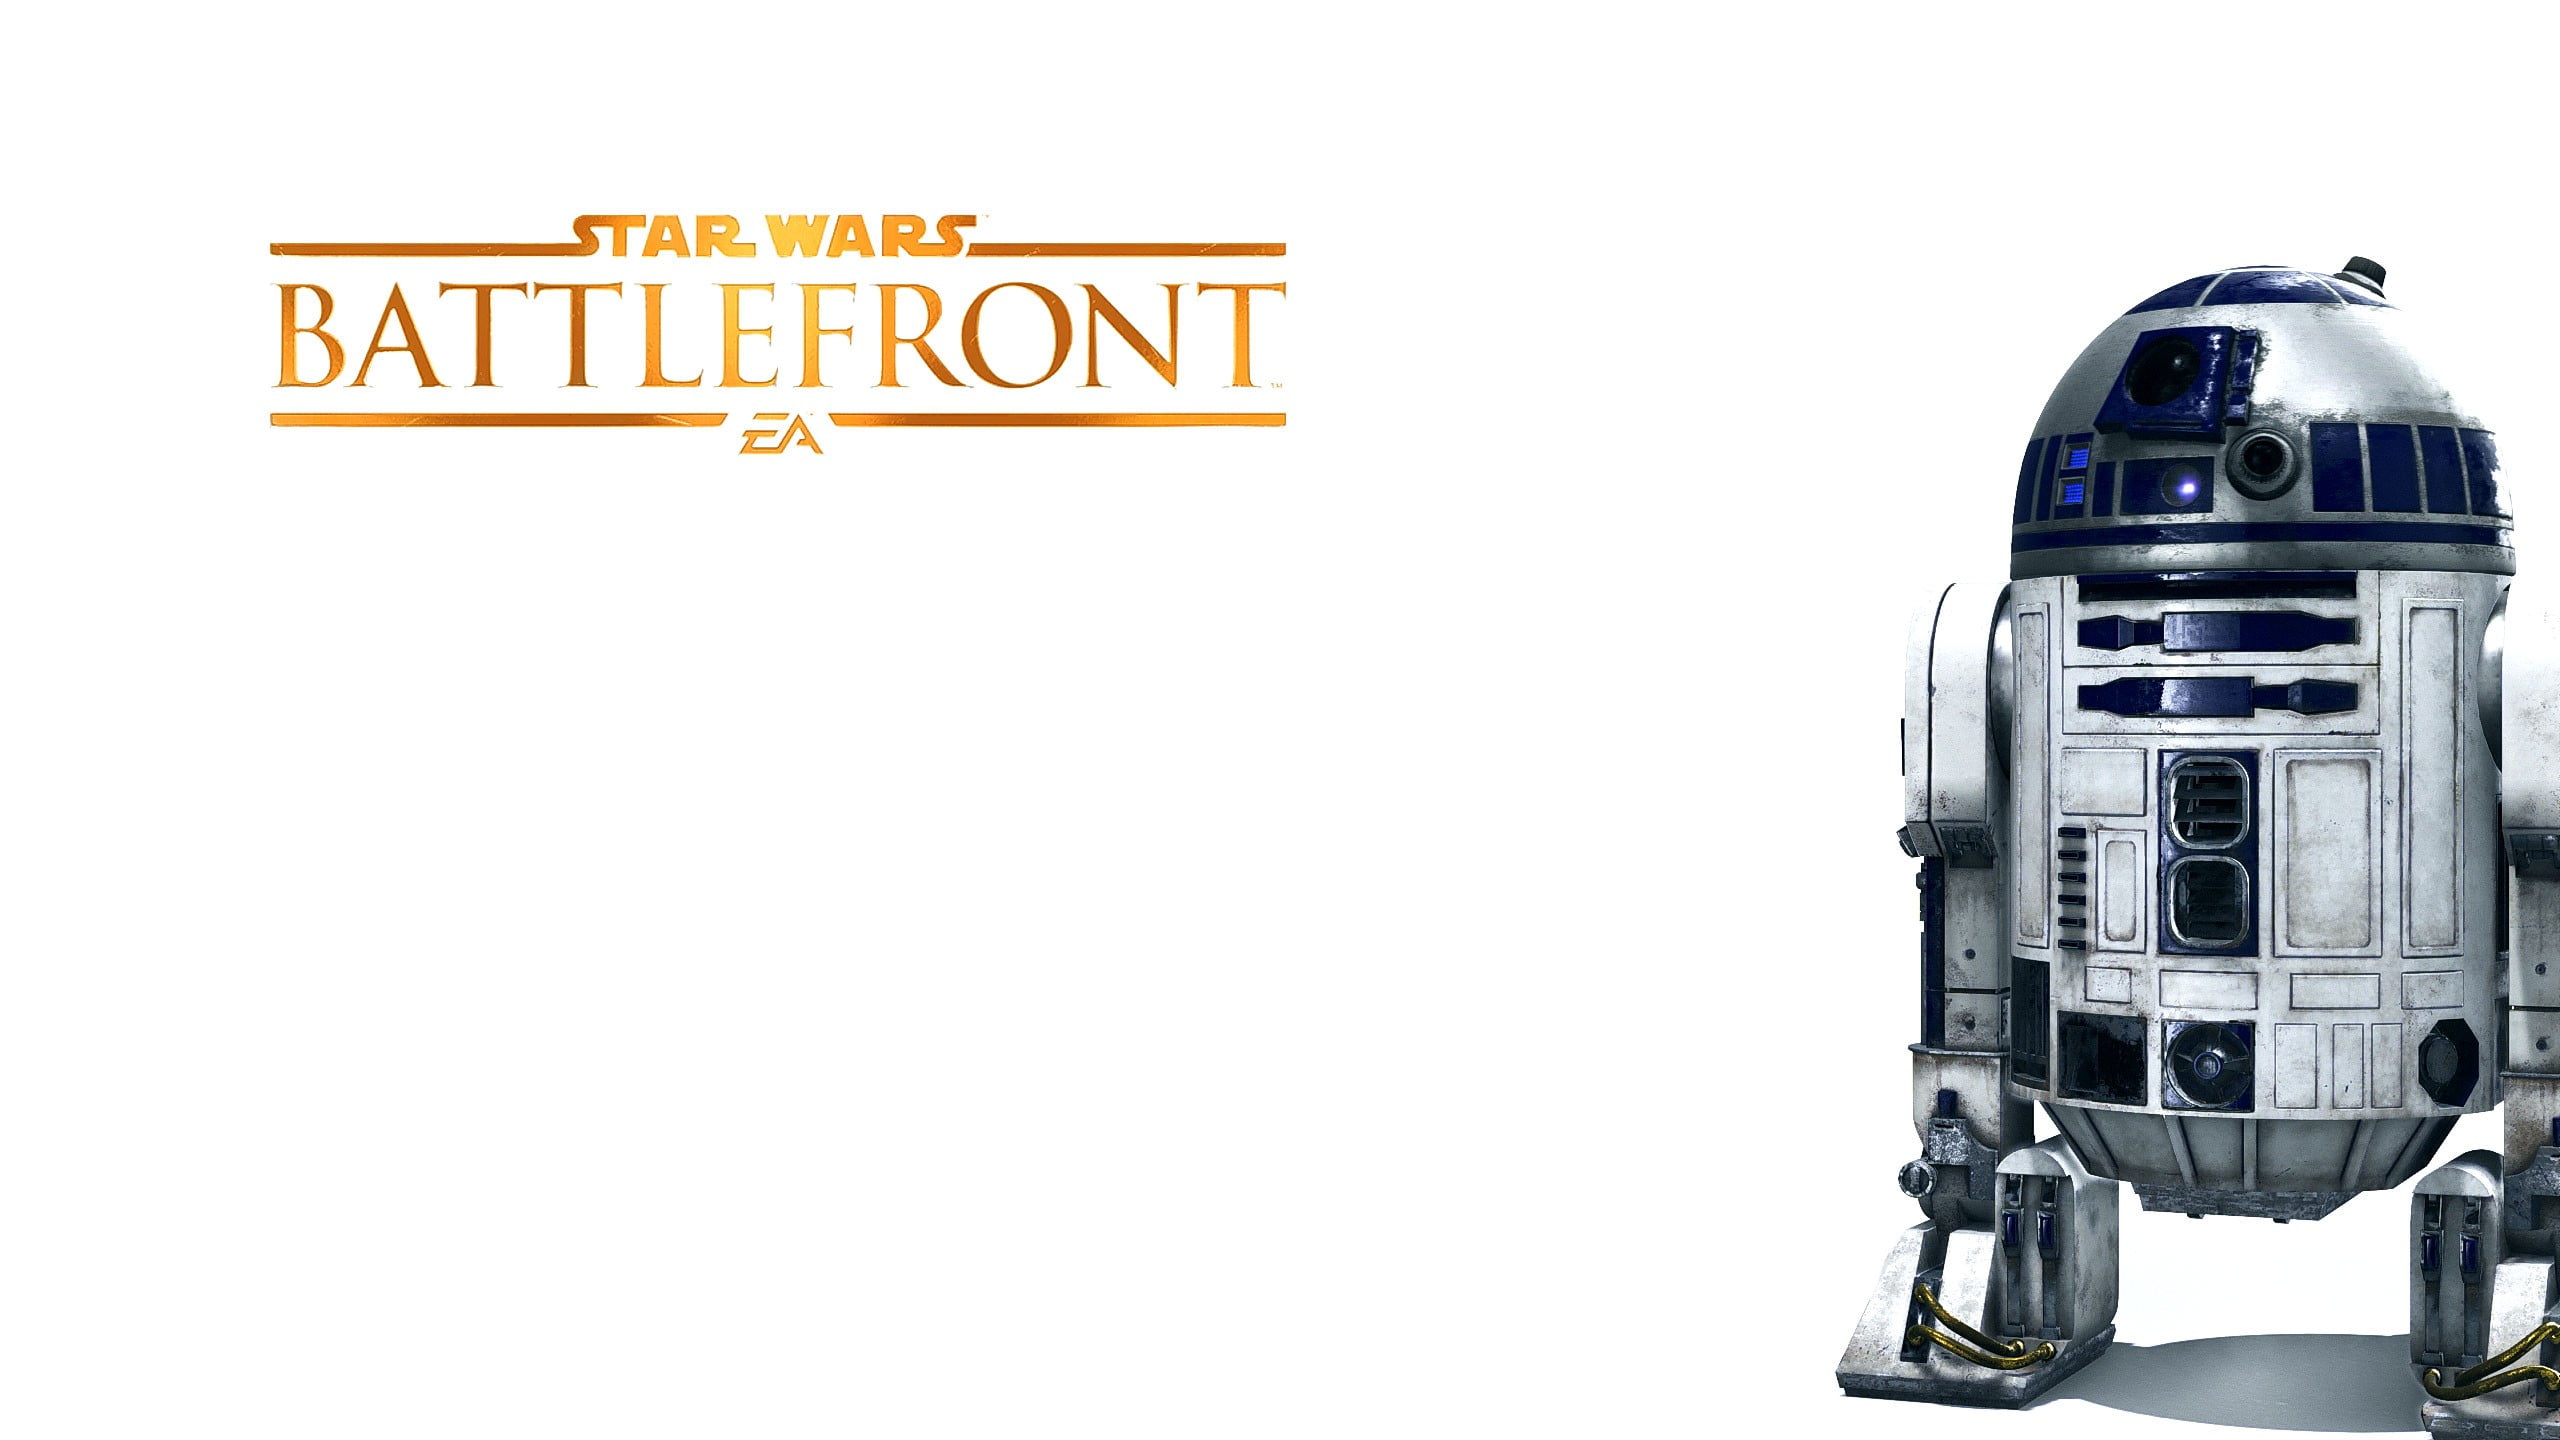 Star Wars Battlefront R2-D2, Star Wars: Battlefront, R2-D2, video games, simple background